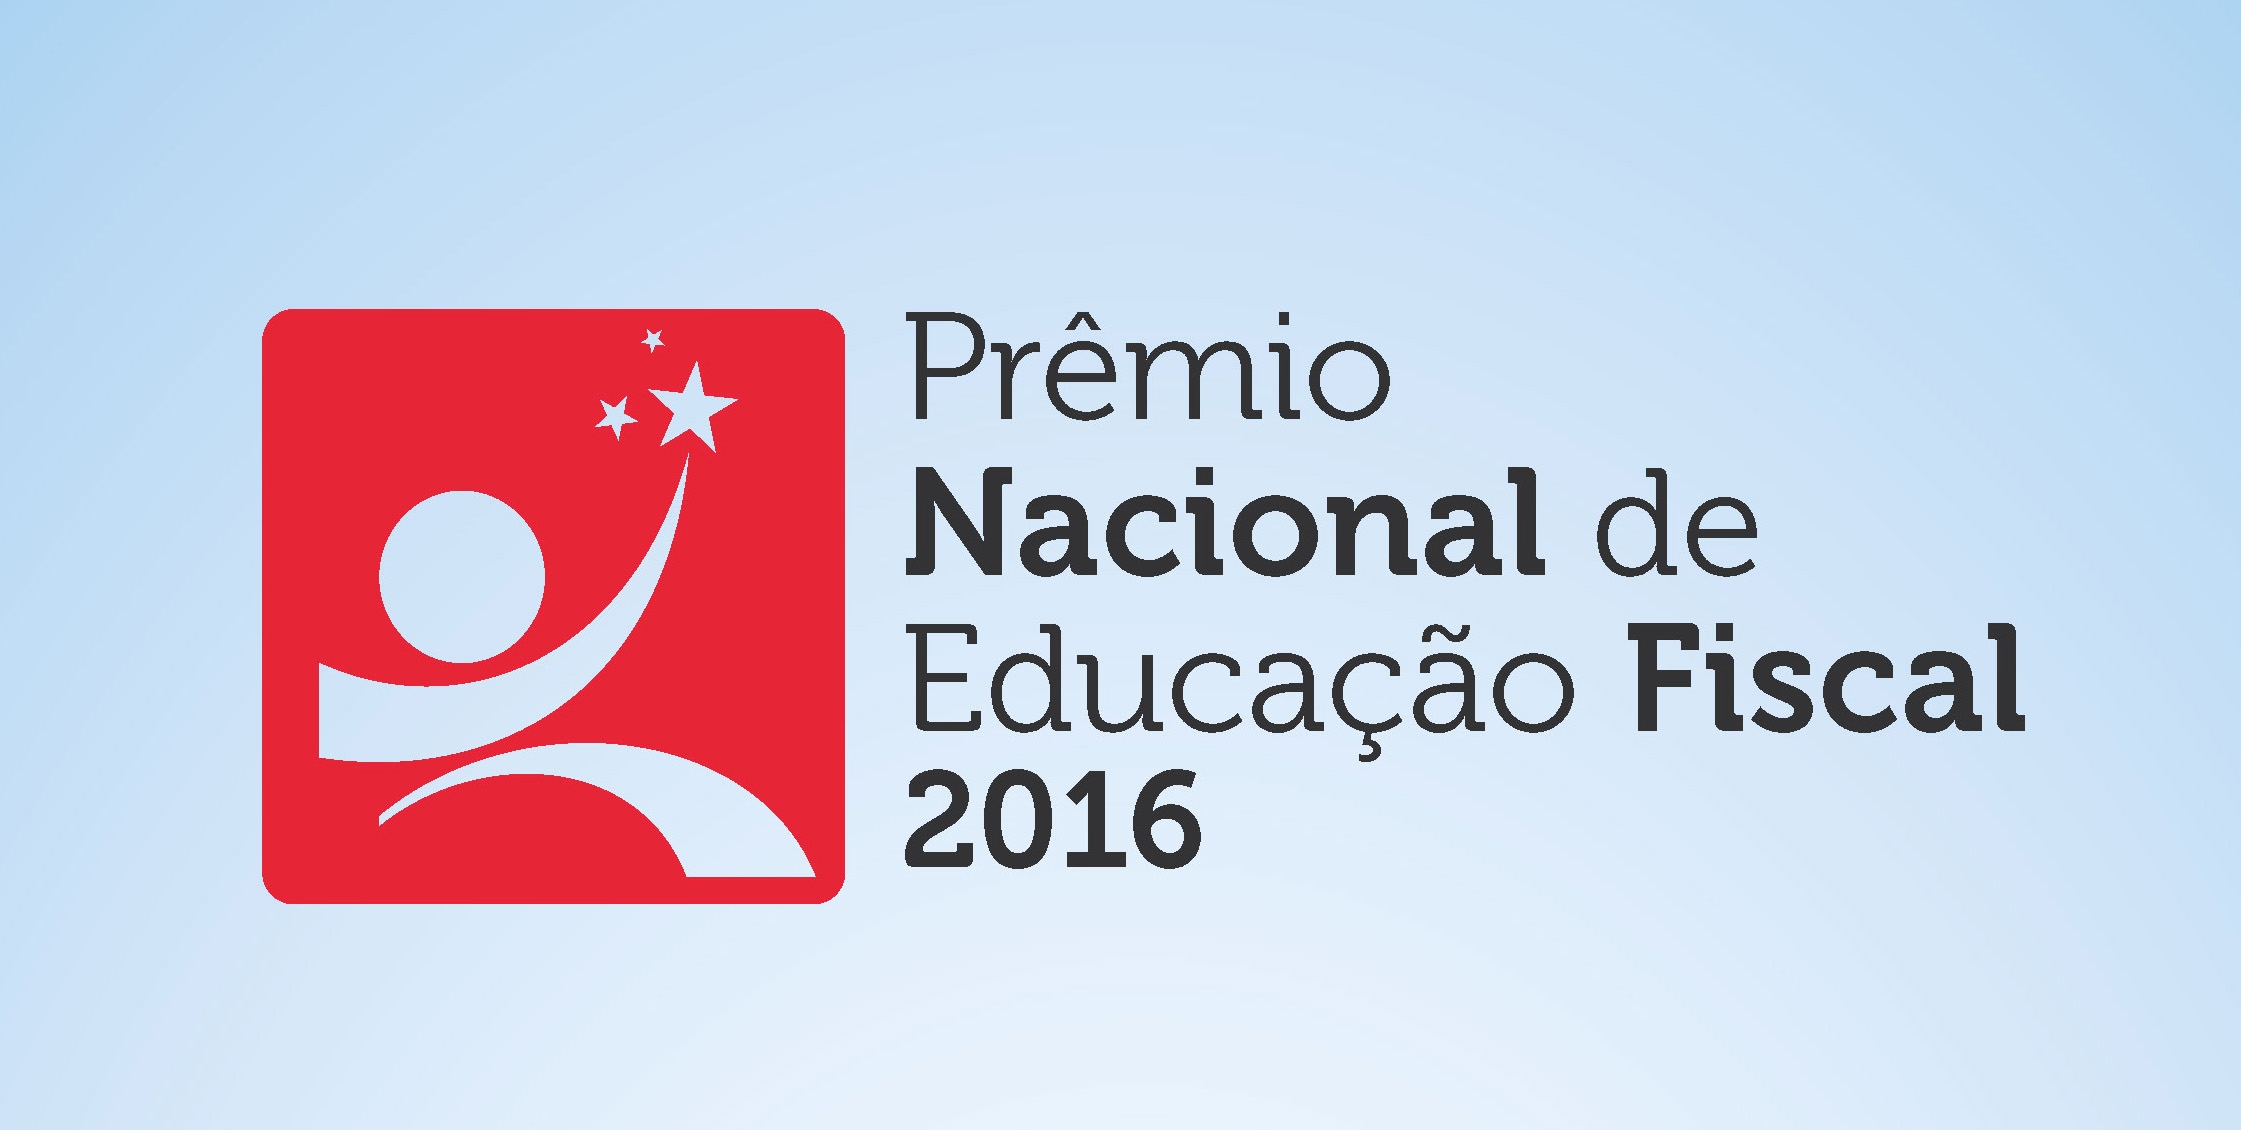 Prêmio Nacional de Educação Fiscal 2016 será lançado em Brasília